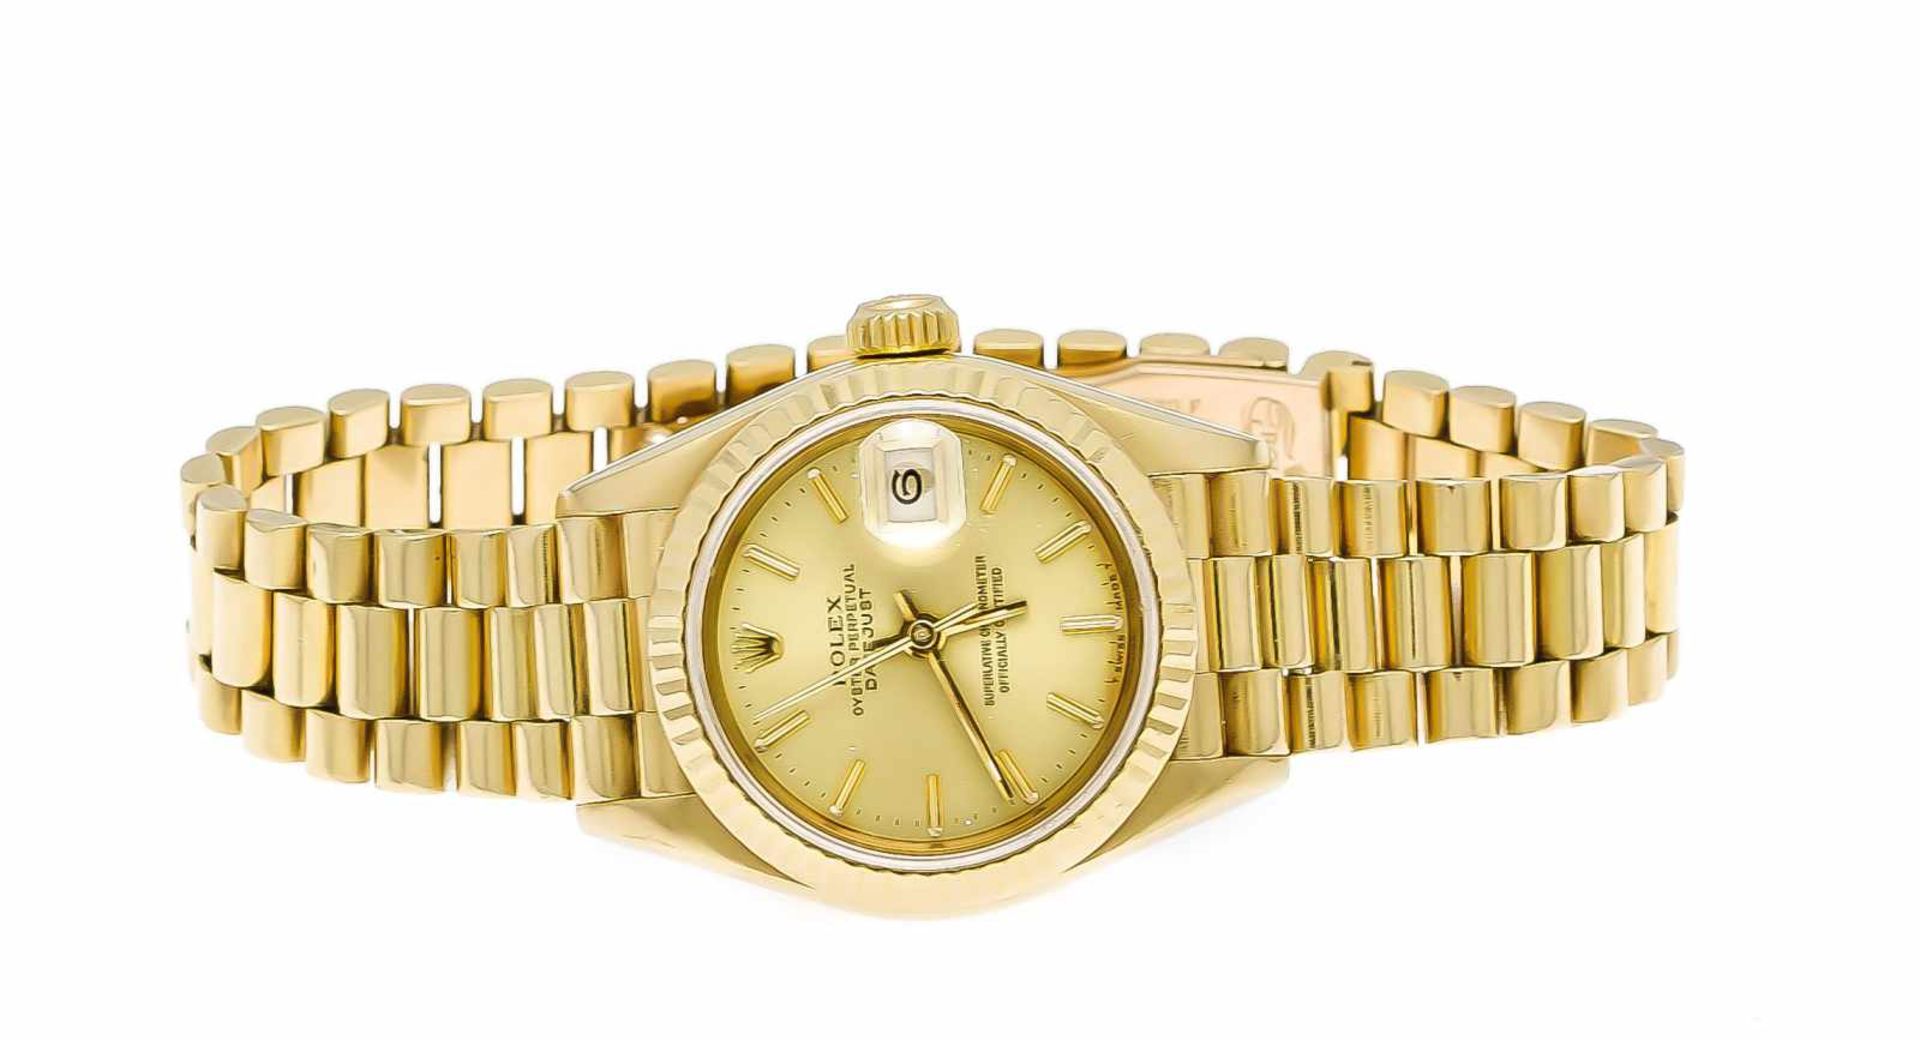 Rolex Datejust Damenuhr Ref. 69173, GG 750, mit Präsidentenband und verdeckter Schließe,Uhrwerk Kal. - Image 2 of 3